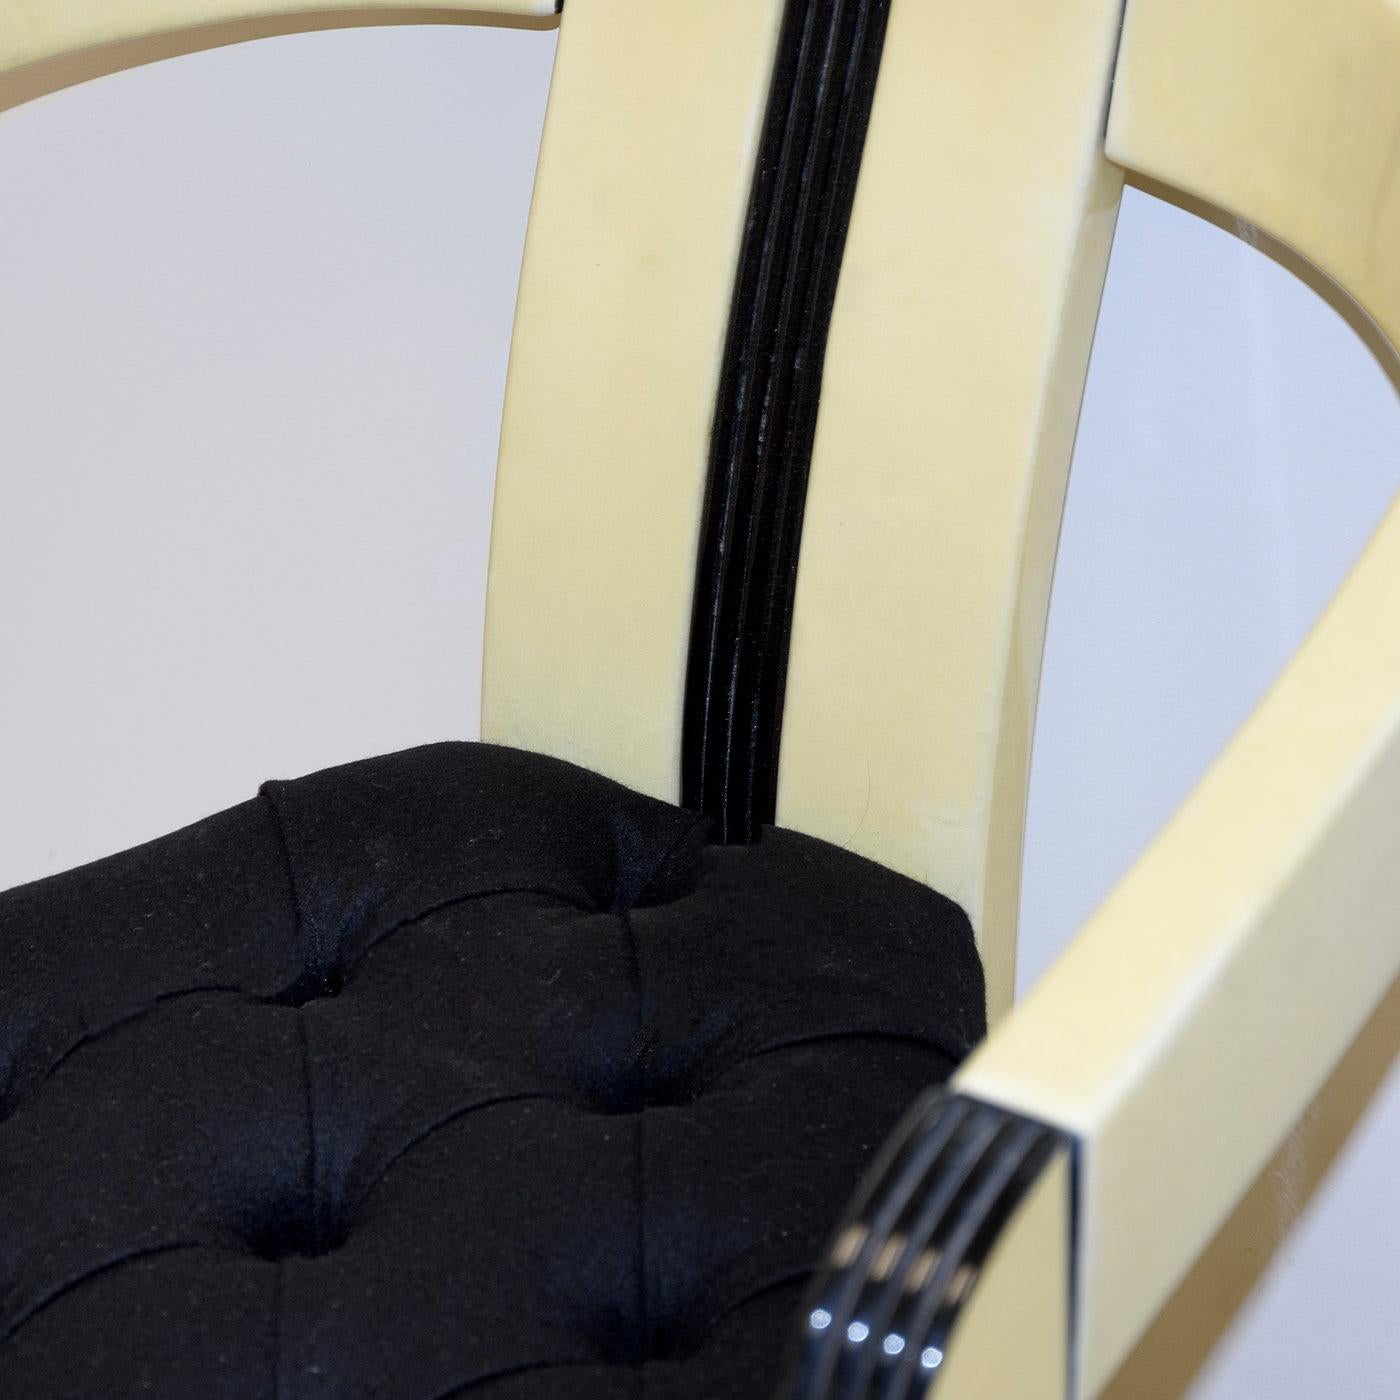 Défini par sa forme triangulaire non conventionnelle et son aspect mid-century, le fauteuil Tria sera une déclaration frappante dans une maison ou un bureau moderne. La structure en bois massif combine un design minimaliste et épuré avec deux